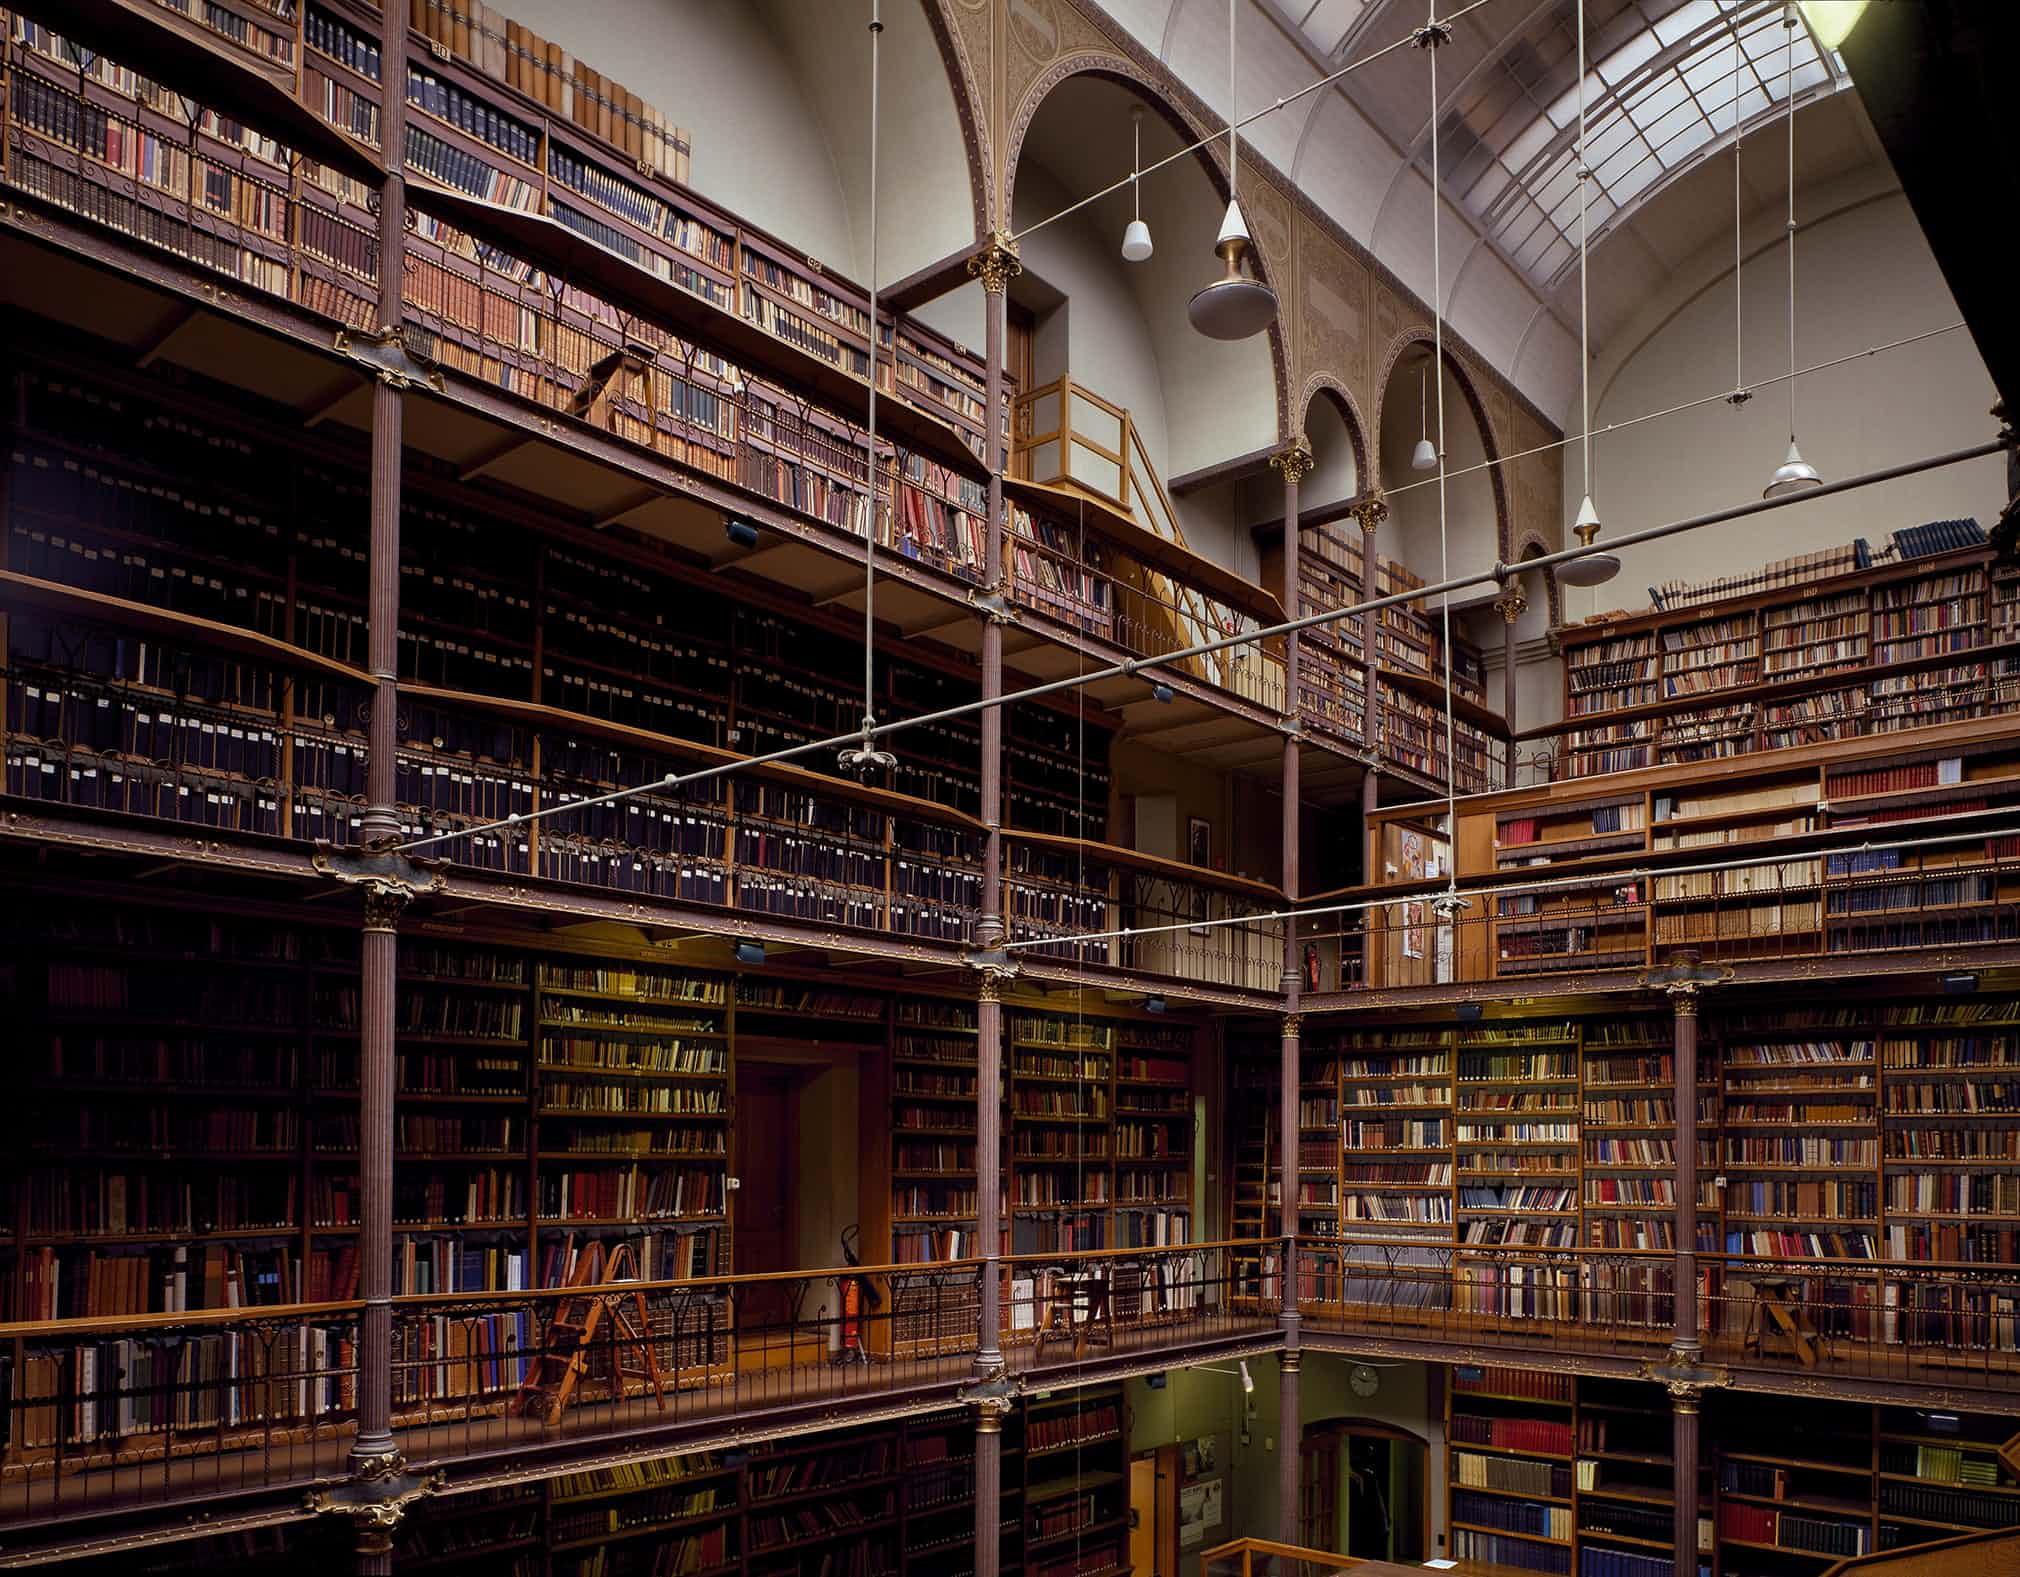 Car library. Музей Рейксмузеум в Амстердаме библиотека. Парламентская библиотека Handelingenkamer, Нидерланды. Самая красивая библиотека в мире.